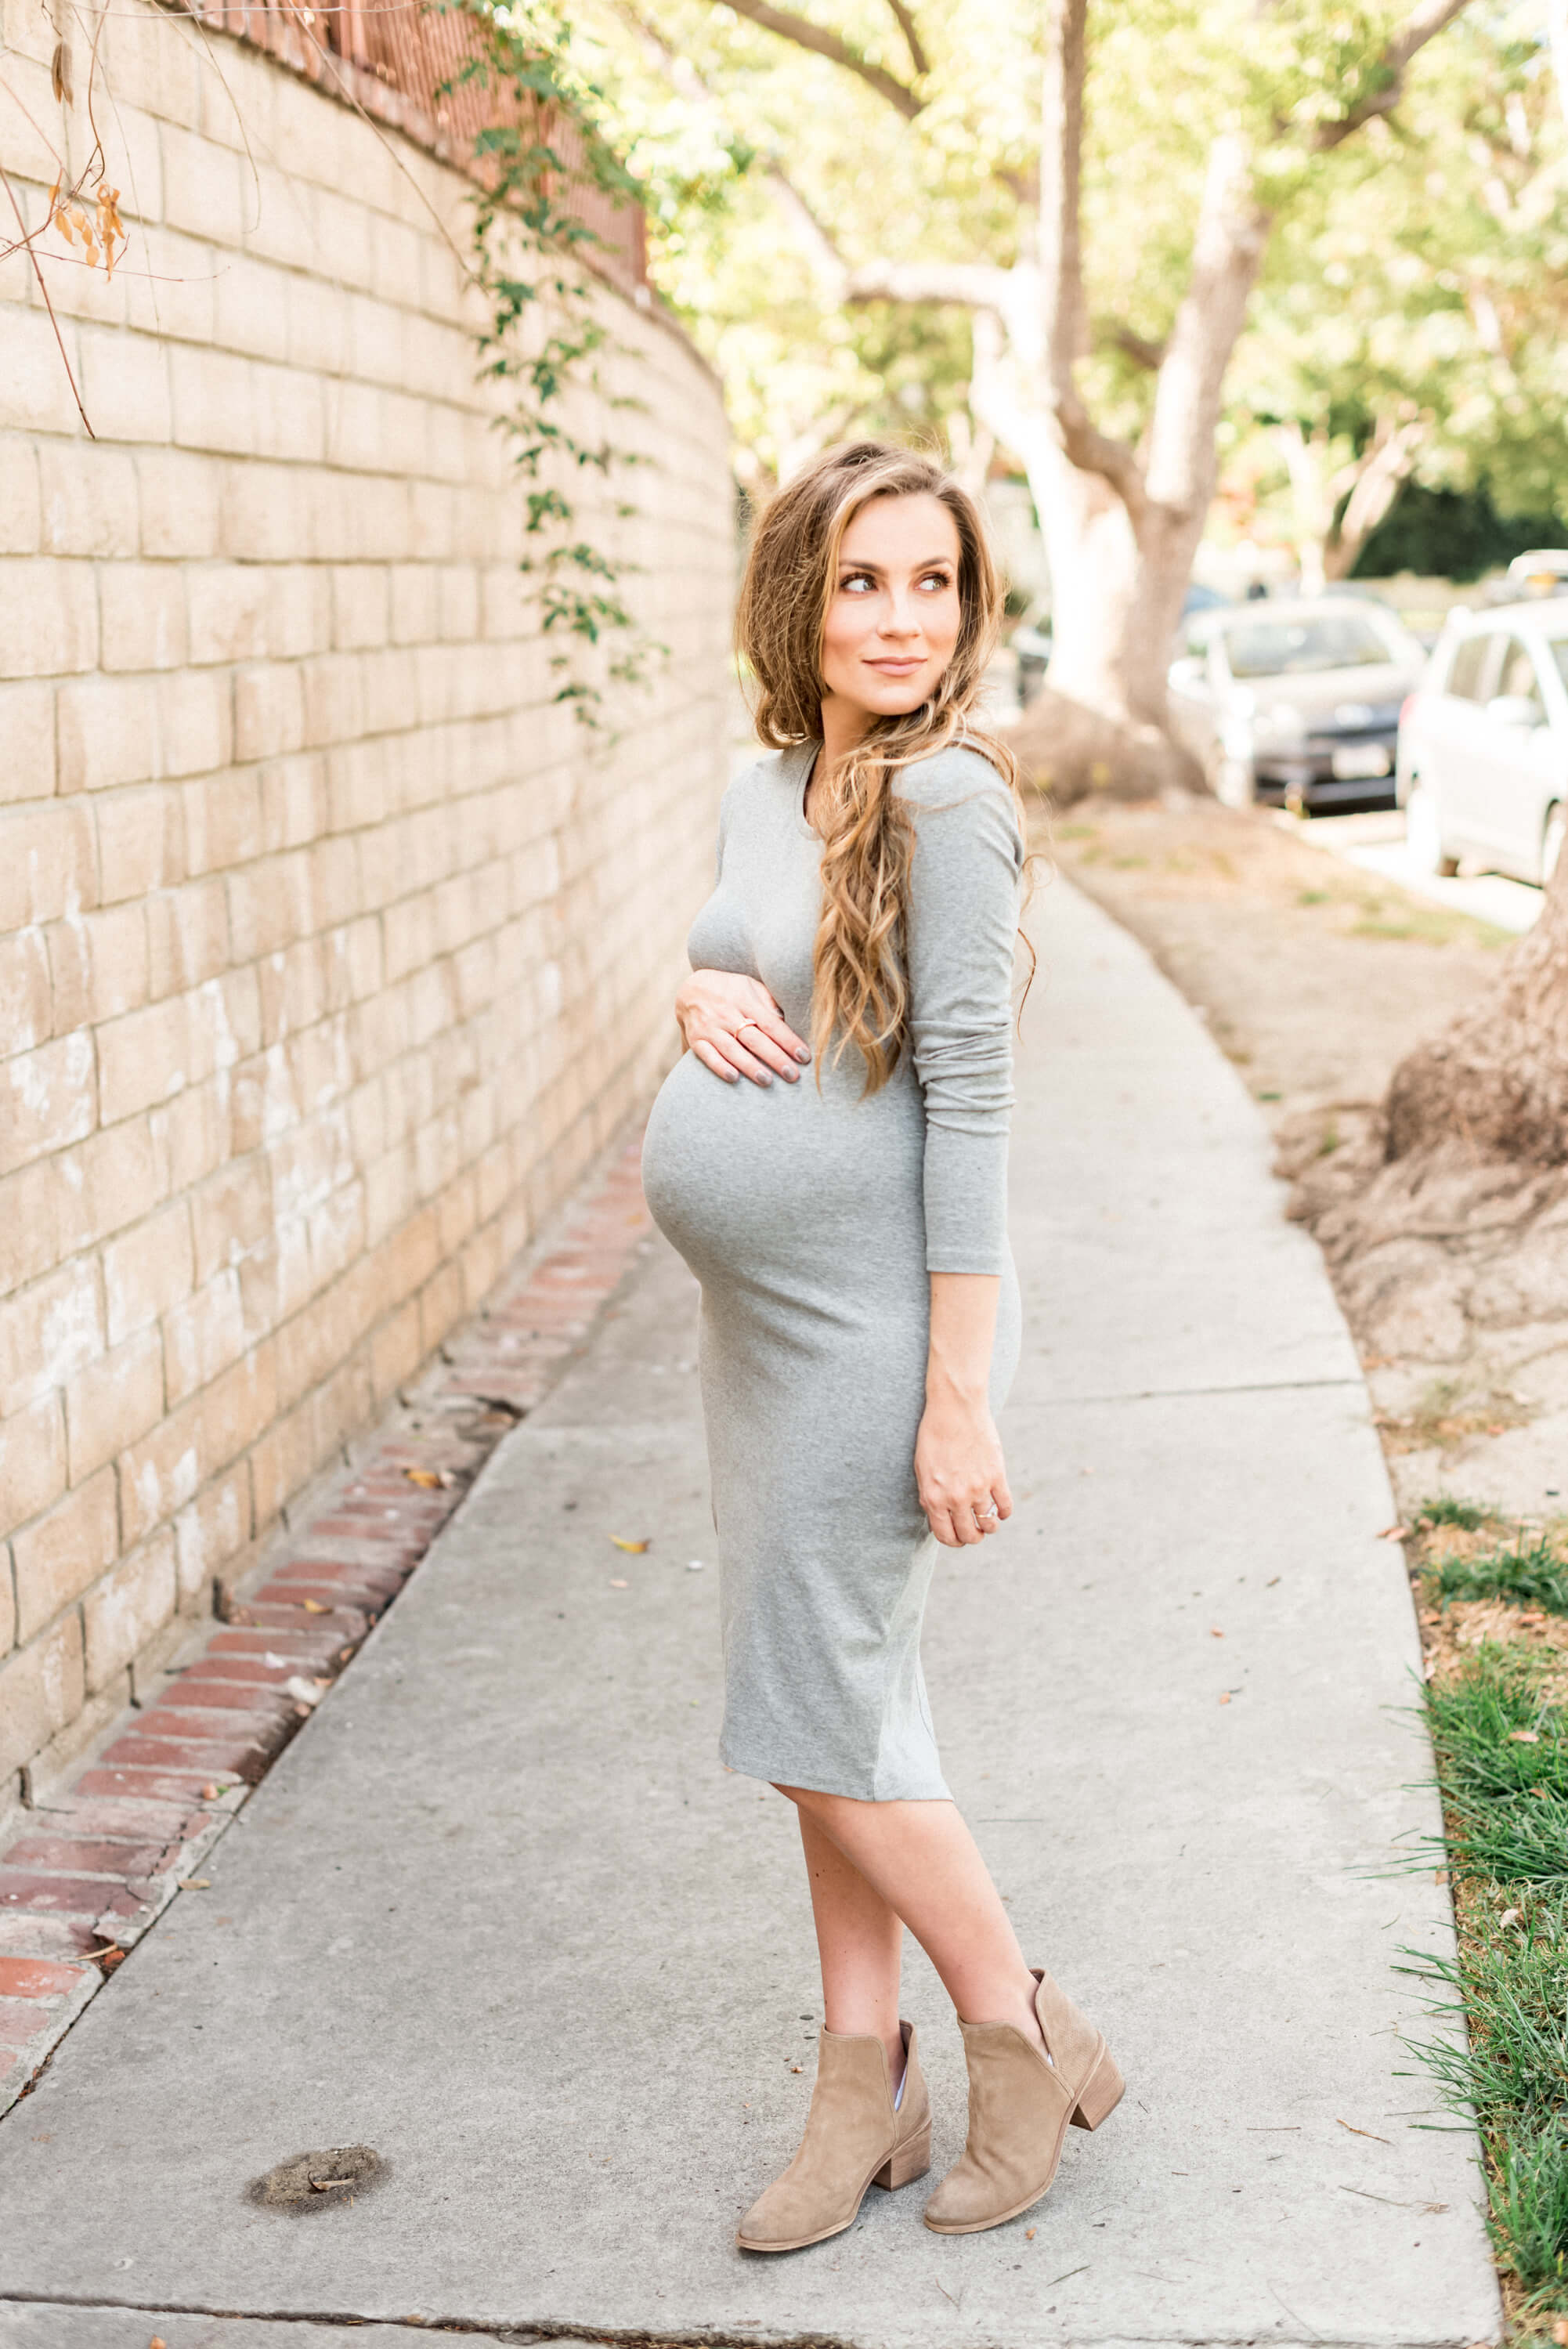 How to Dress While Pregnant Angela Lanter Hello Gorgeous